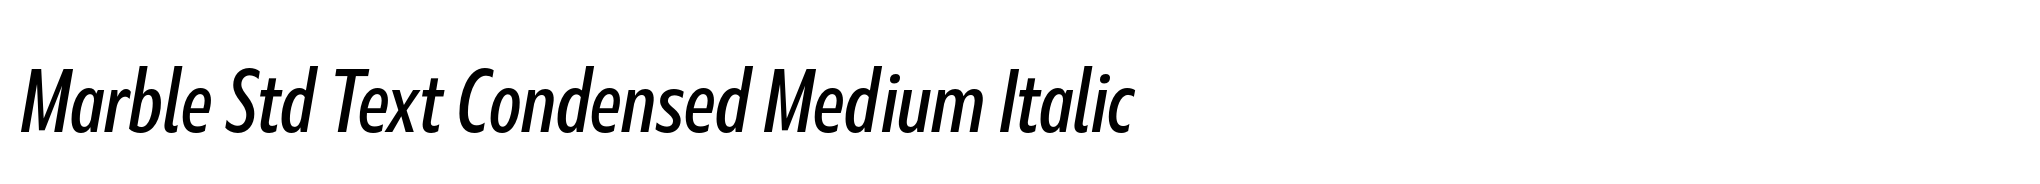 Marble Std Text Condensed Medium Italic image